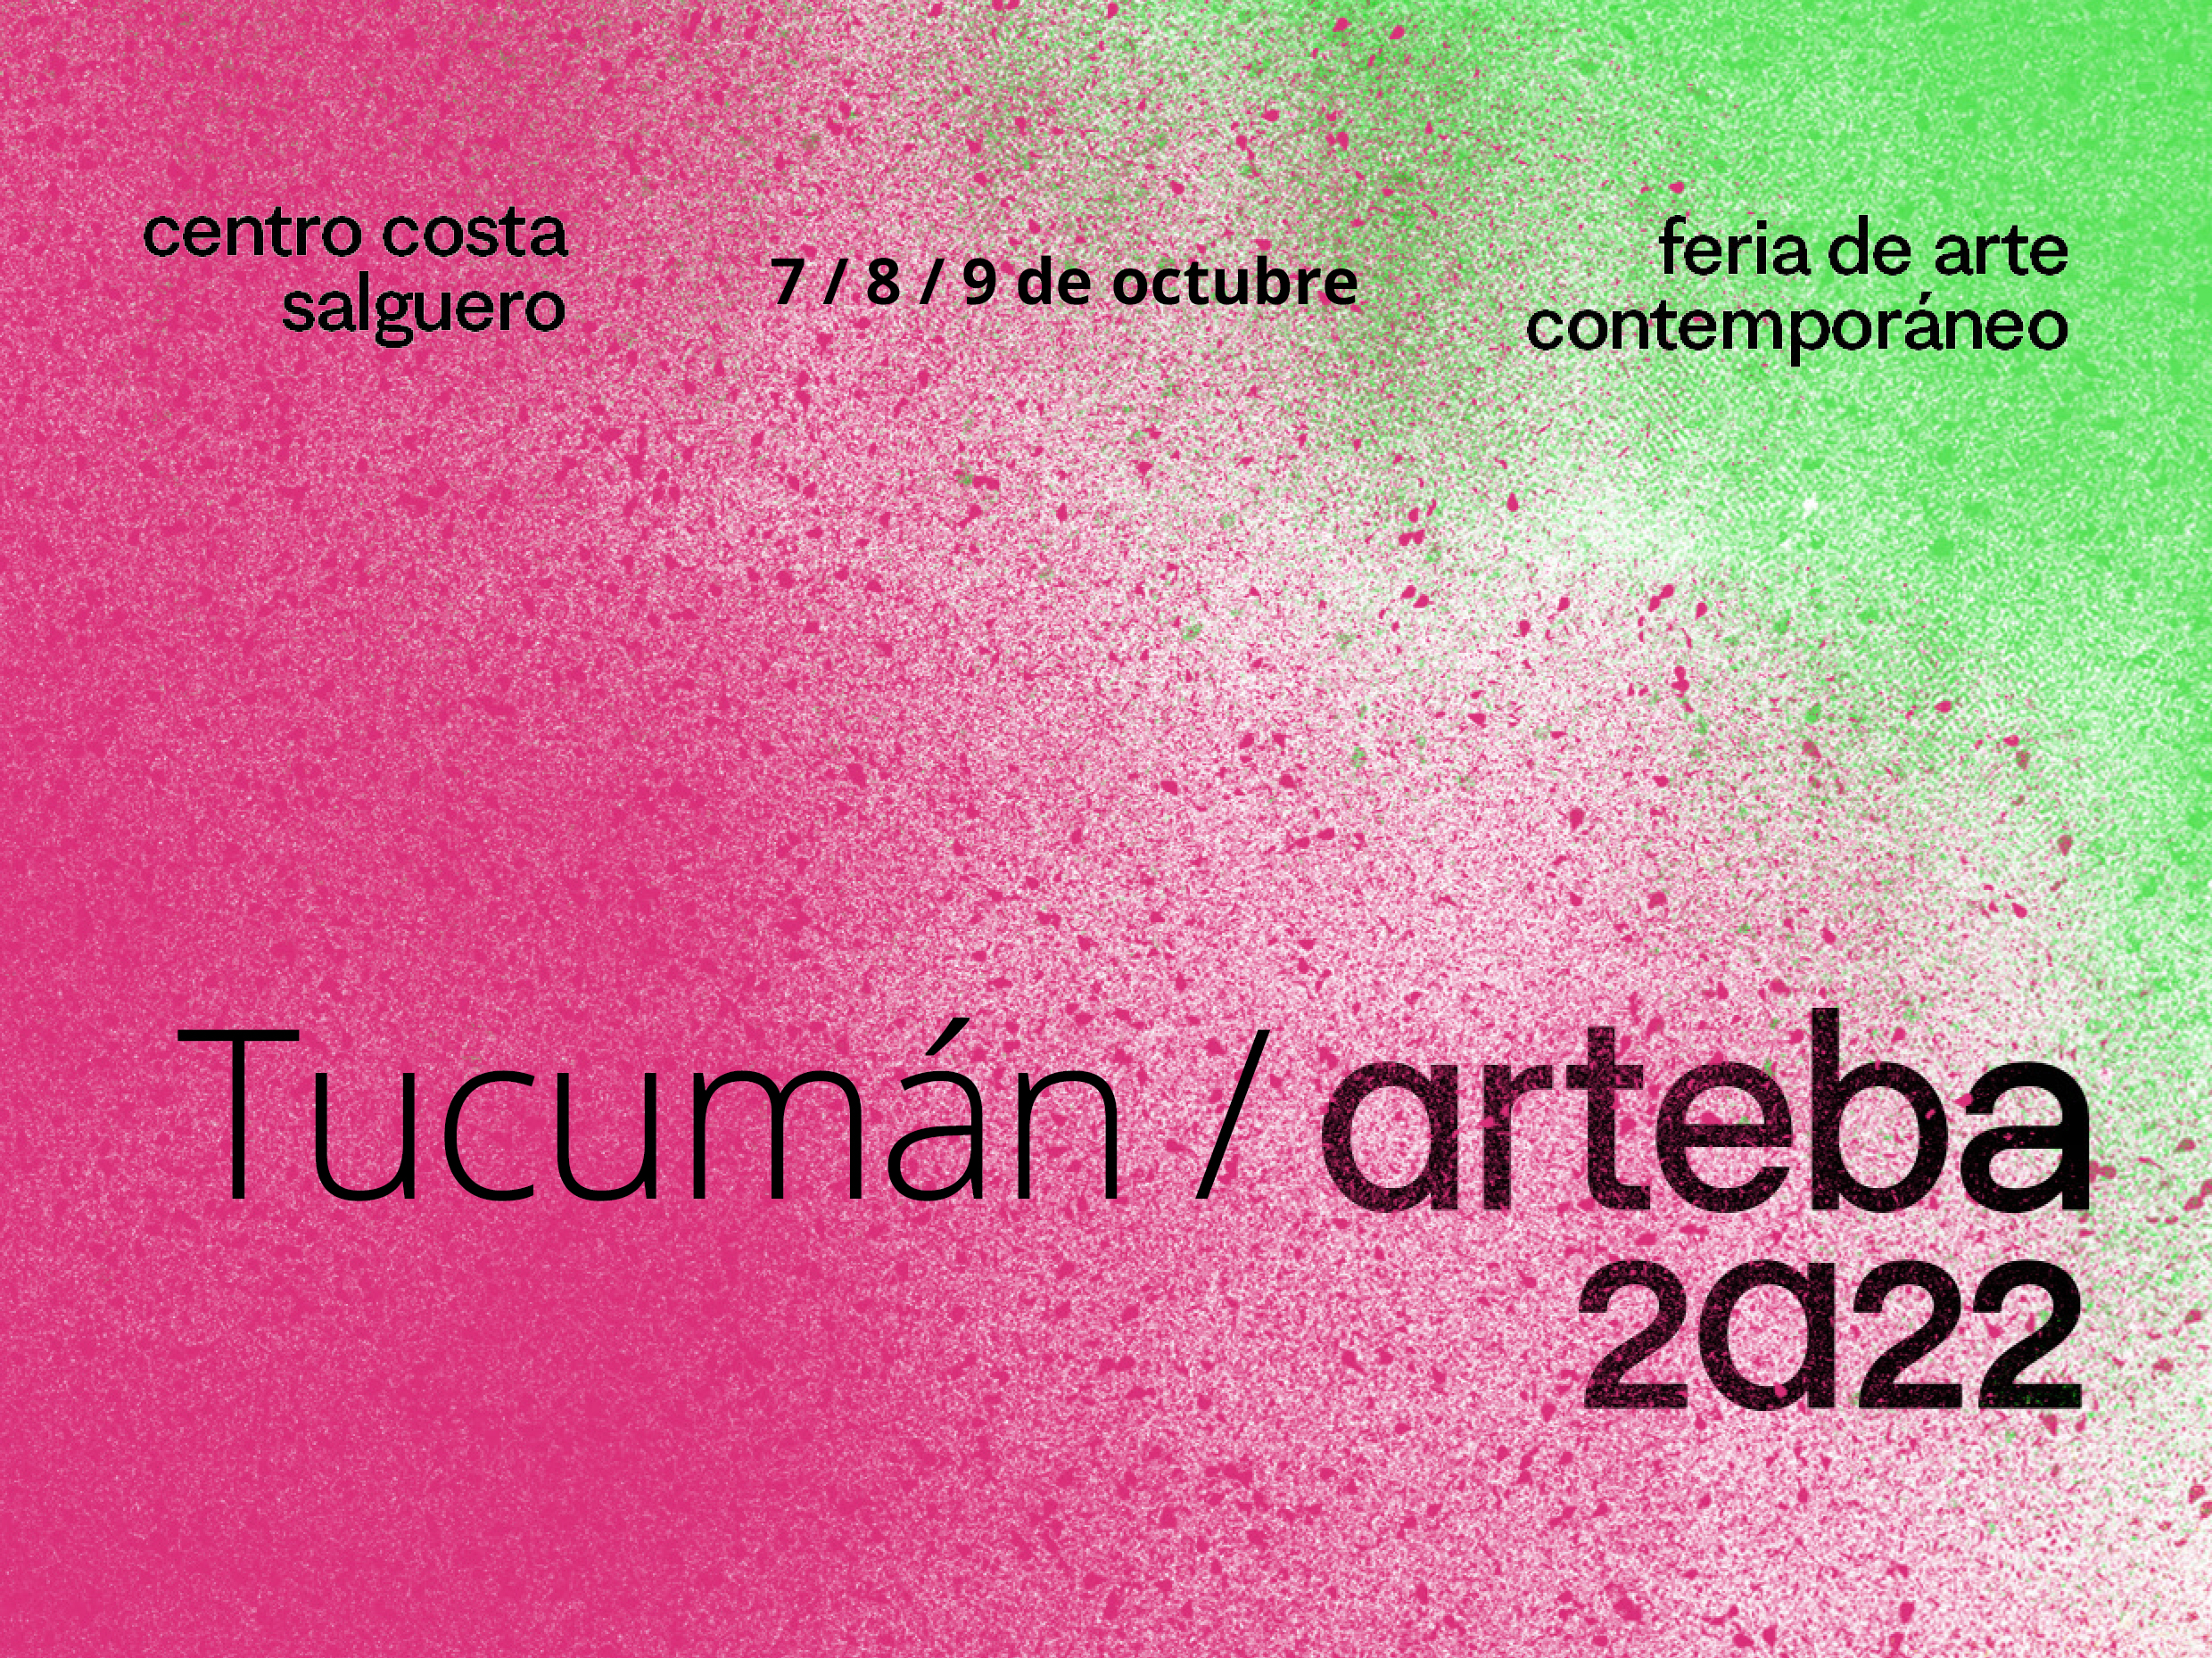 Conocé lxs artistas tucumanxs que participaron en la edición 2022